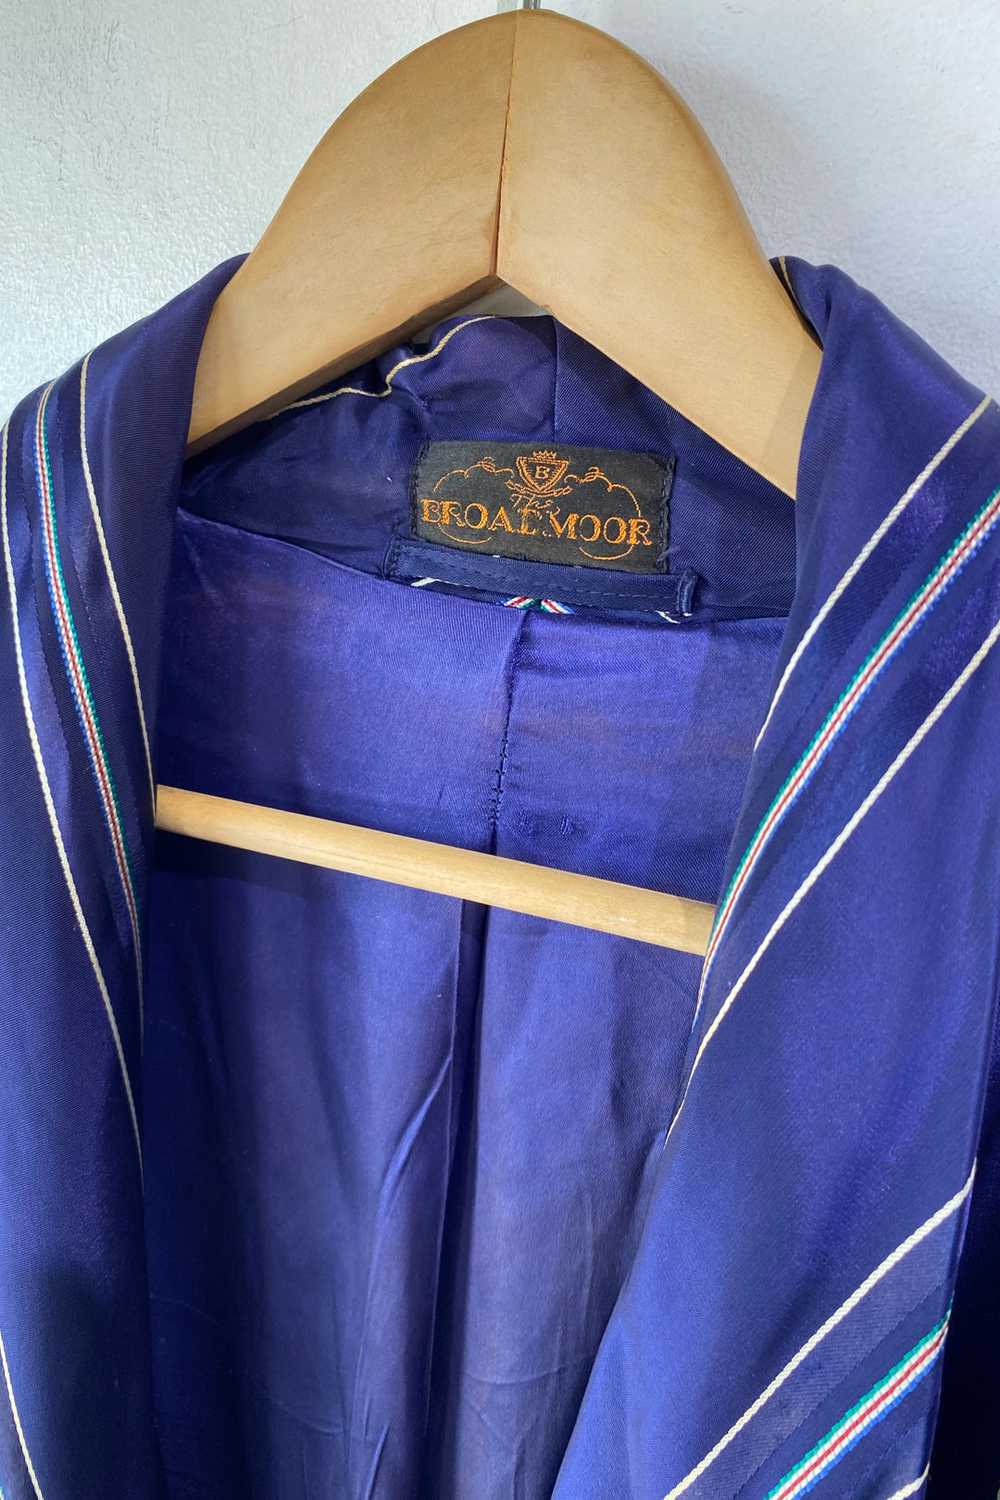 Vintage Broadmoor Navy Blue Silk Robe - image 5